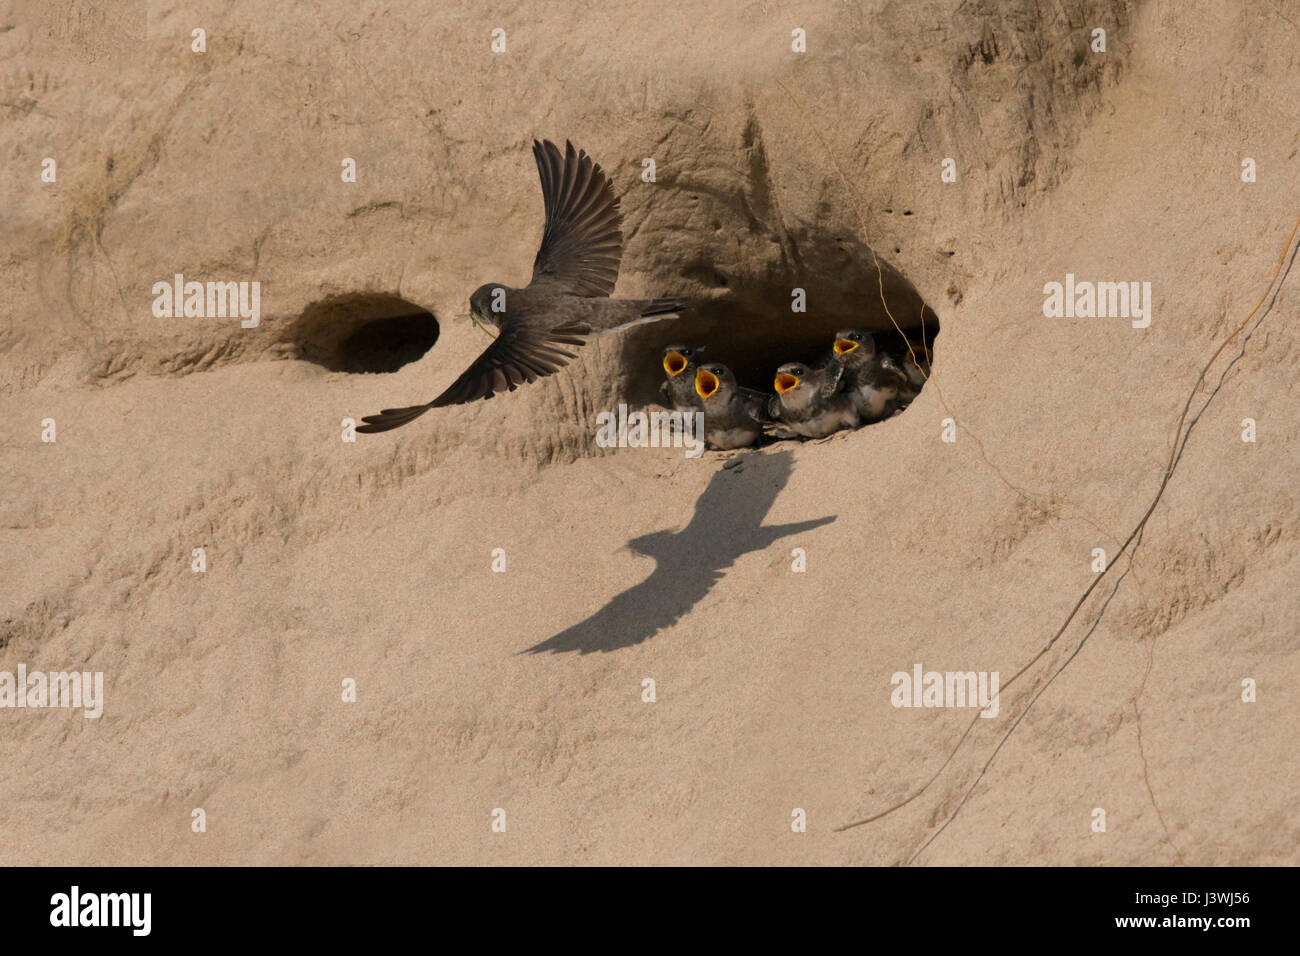 Banco tragar pollitos en el nido de la duna de arena llamada como las moscas adultas con alimentos, reflejado en la sombra sobre arena. Foto de stock